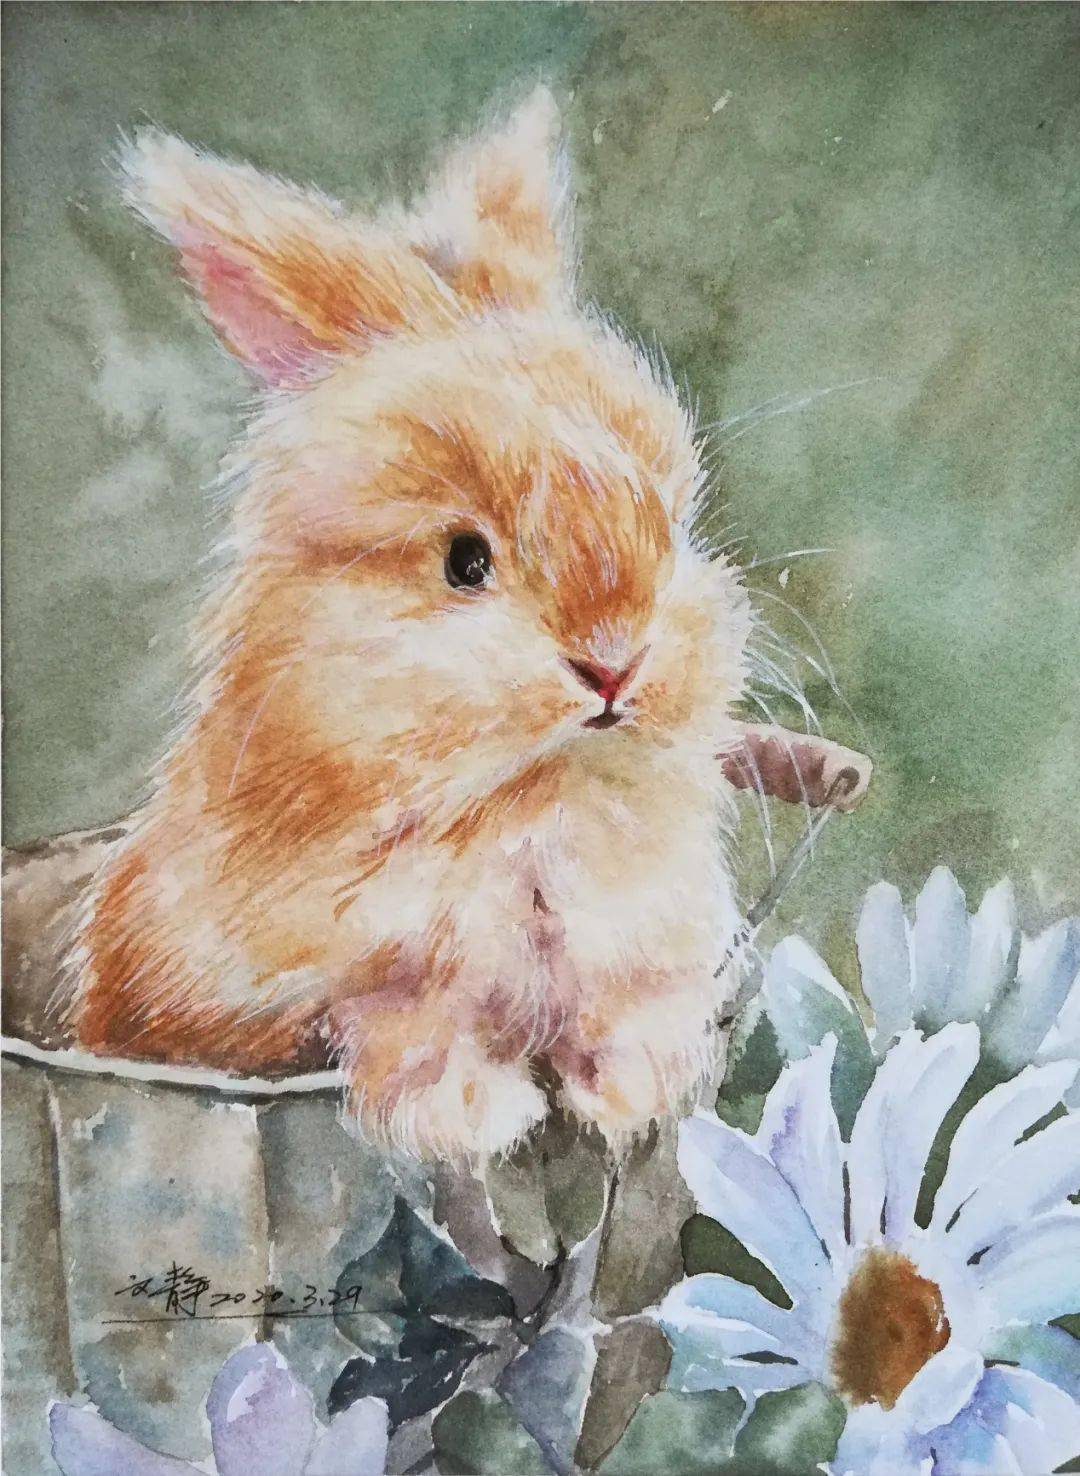 水彩画教程 | 可爱兔子绘画教程(内含详细步骤)